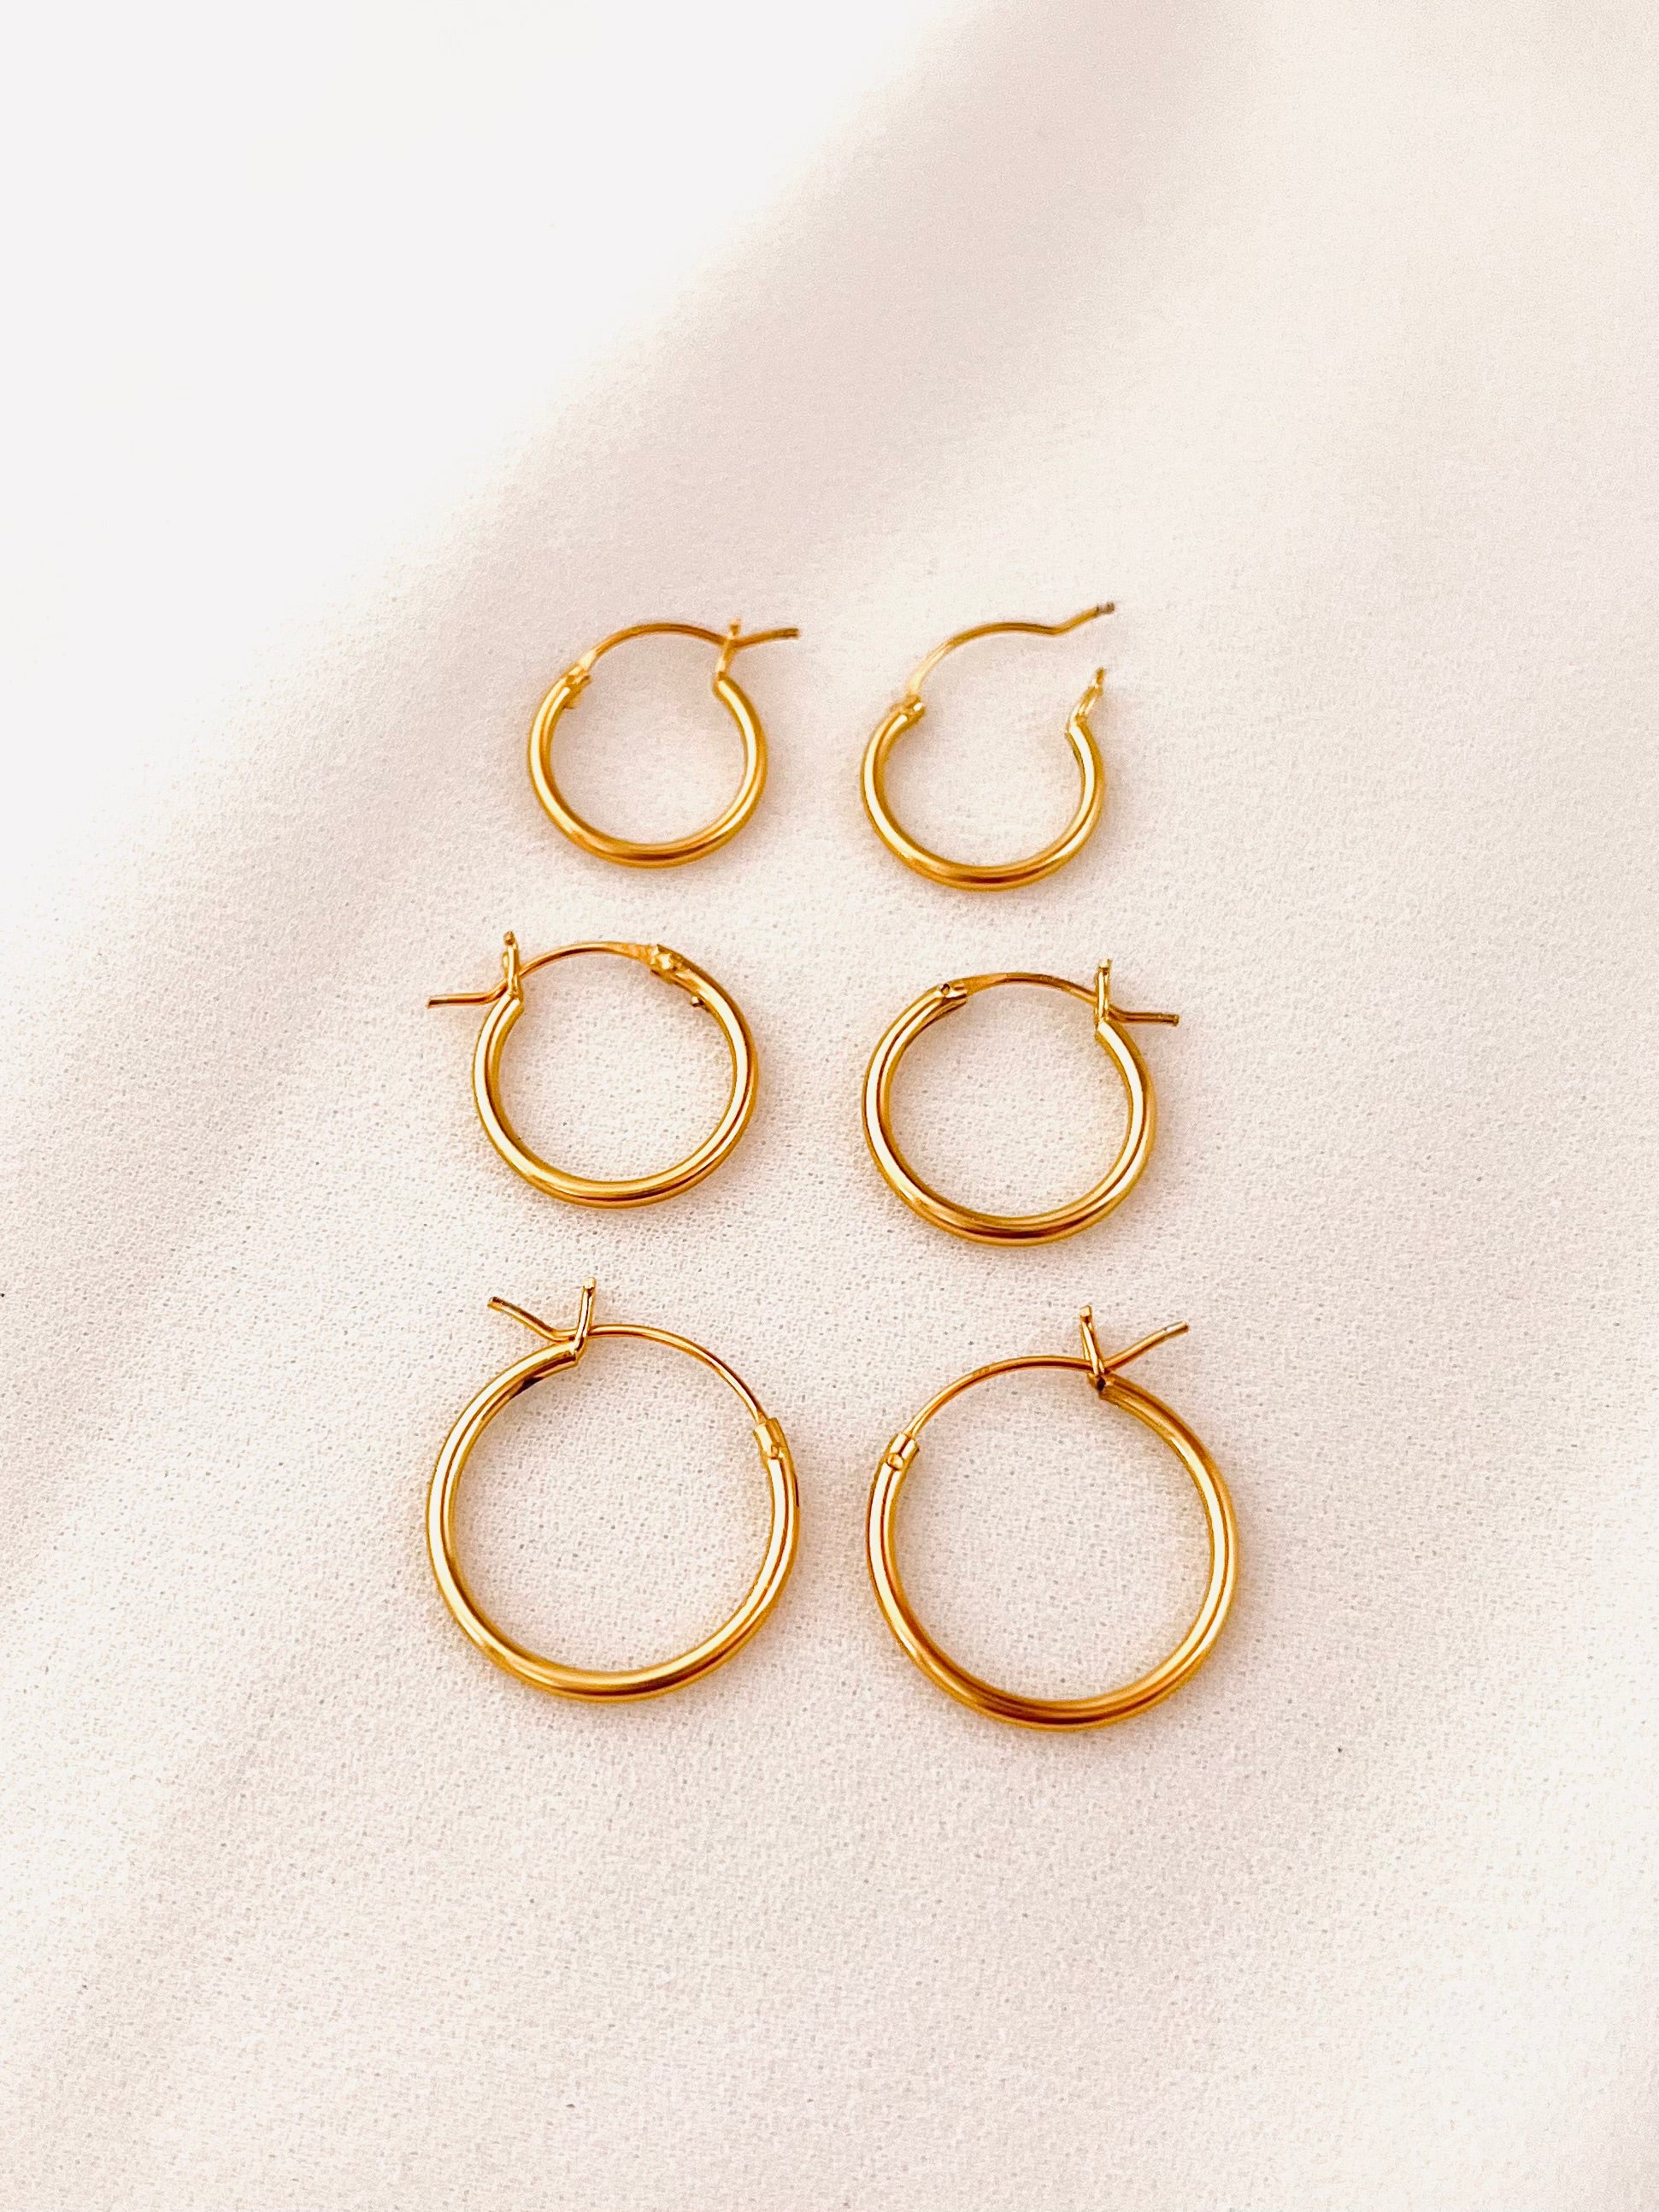 14K 2ct Yellow Gold Diamond Secure Lock 43 mm Hoop Earrings | John Herold  Jewelers | Randolph, NJ